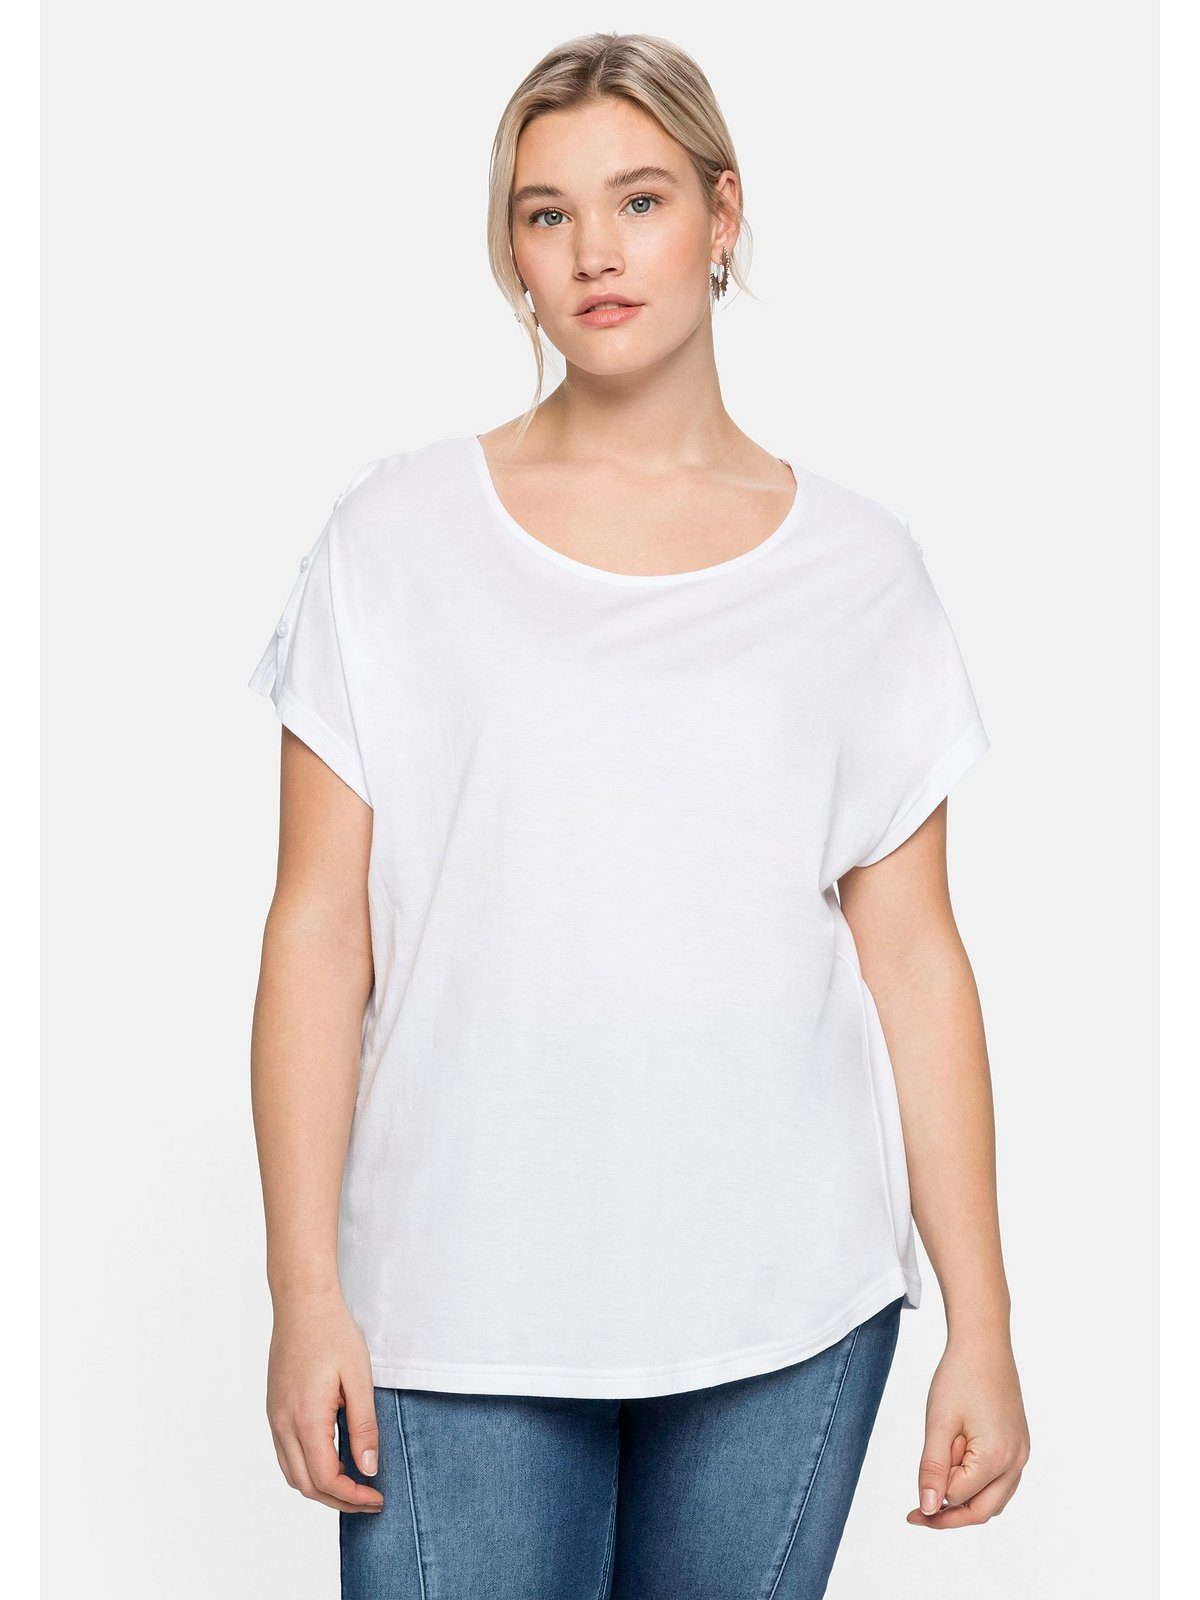 Sheego T-Shirt Große Größen mit offener Schulterpartie, in leichter A-Linie weiß | T-Shirts